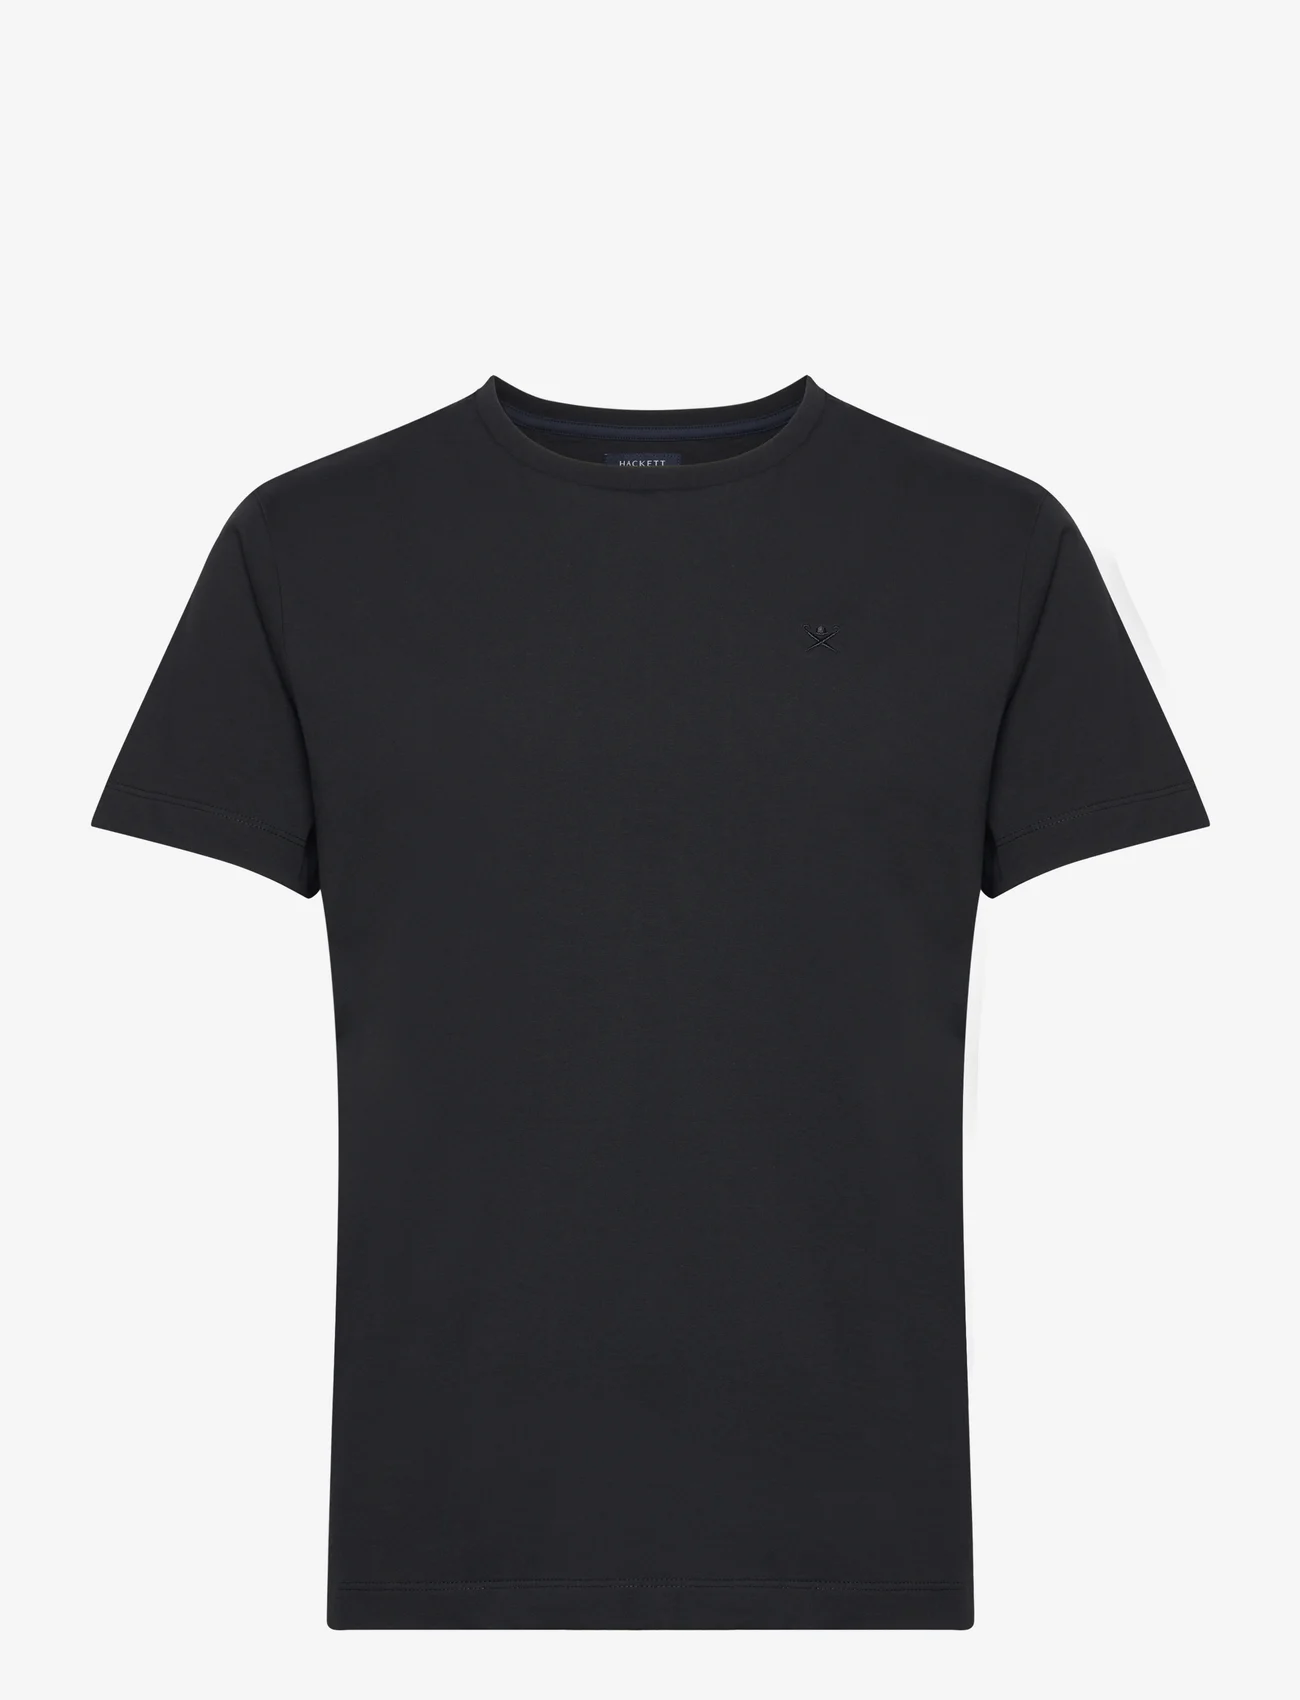 Hackett London - PIMA COTTON TEE - podstawowe koszulki - black - 0